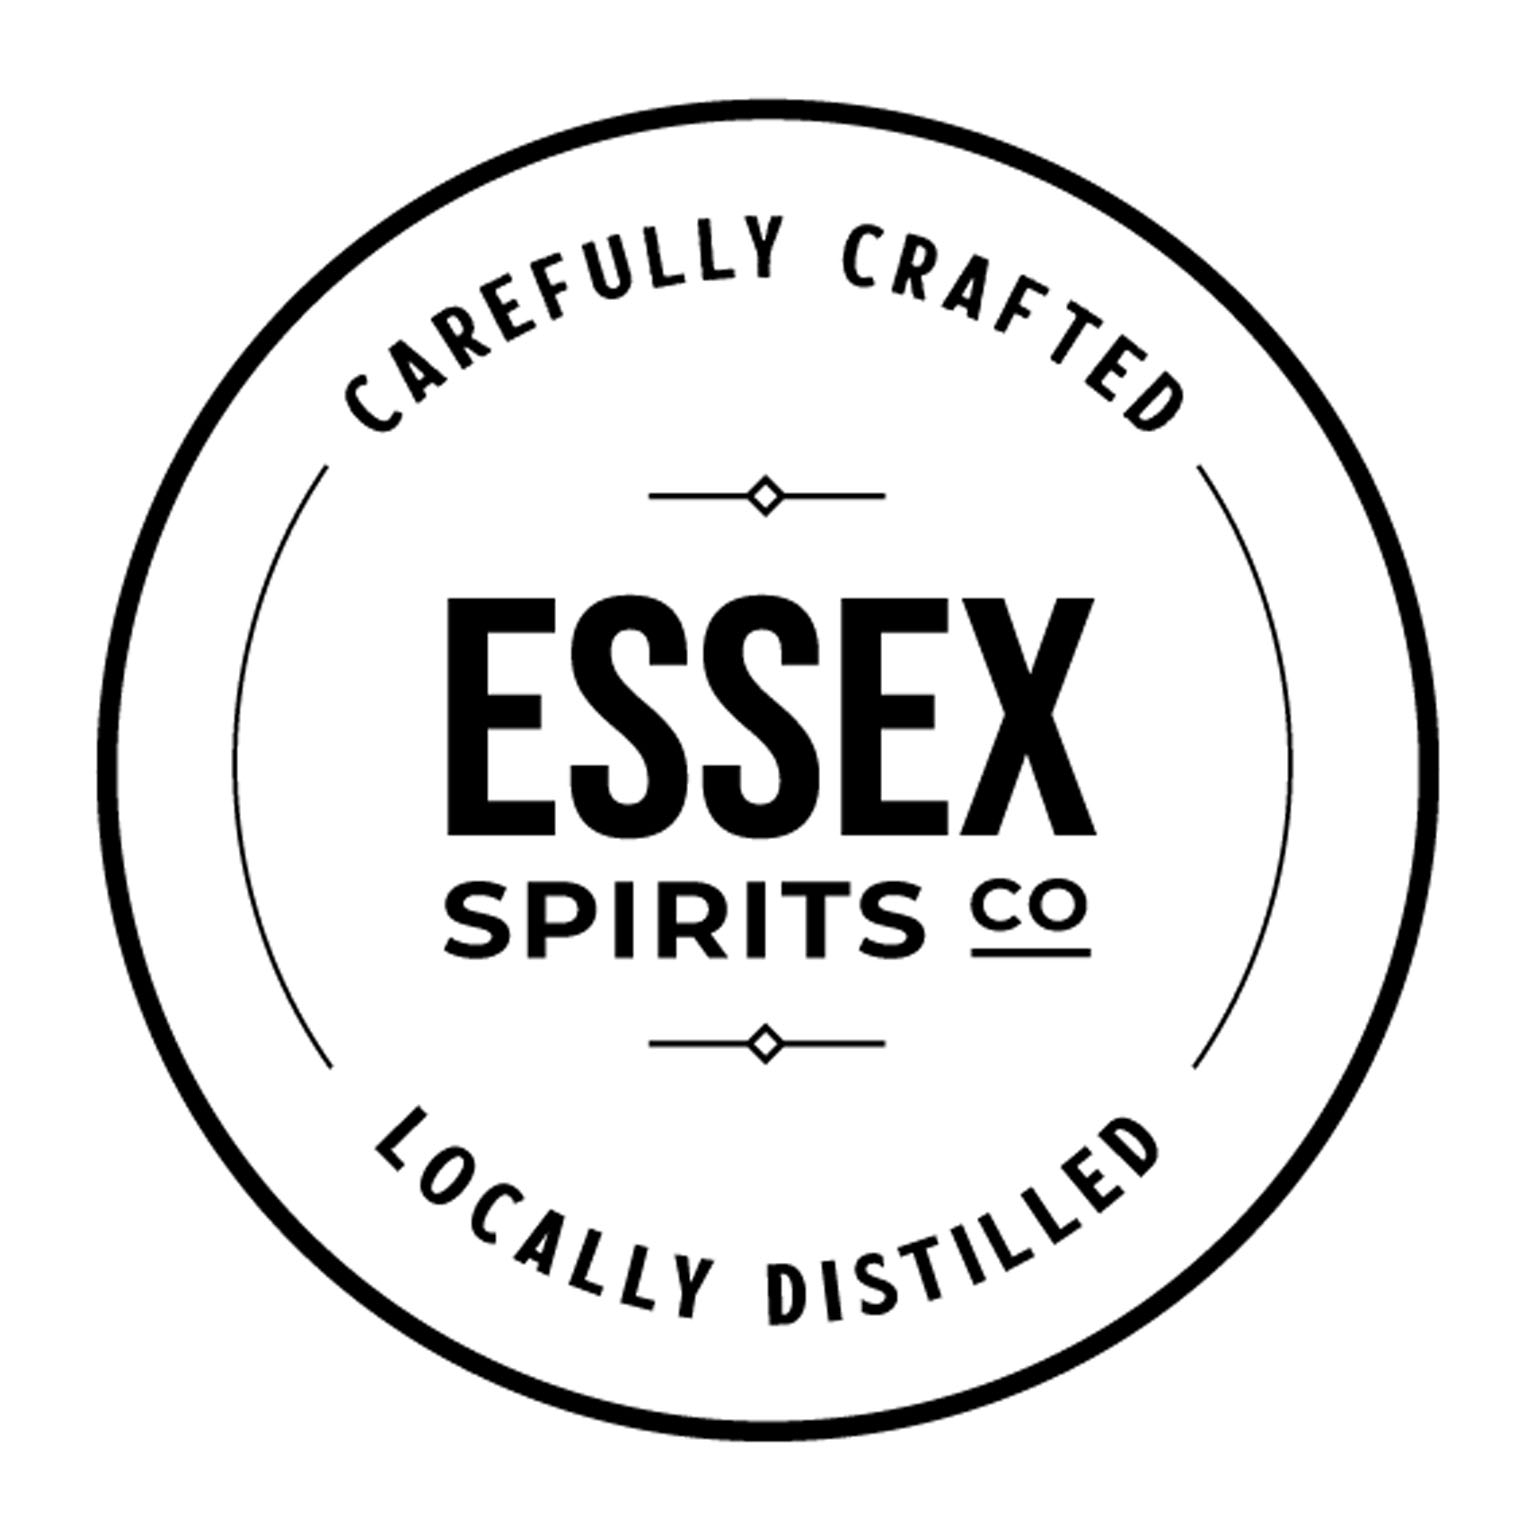 Essex Spirits Co